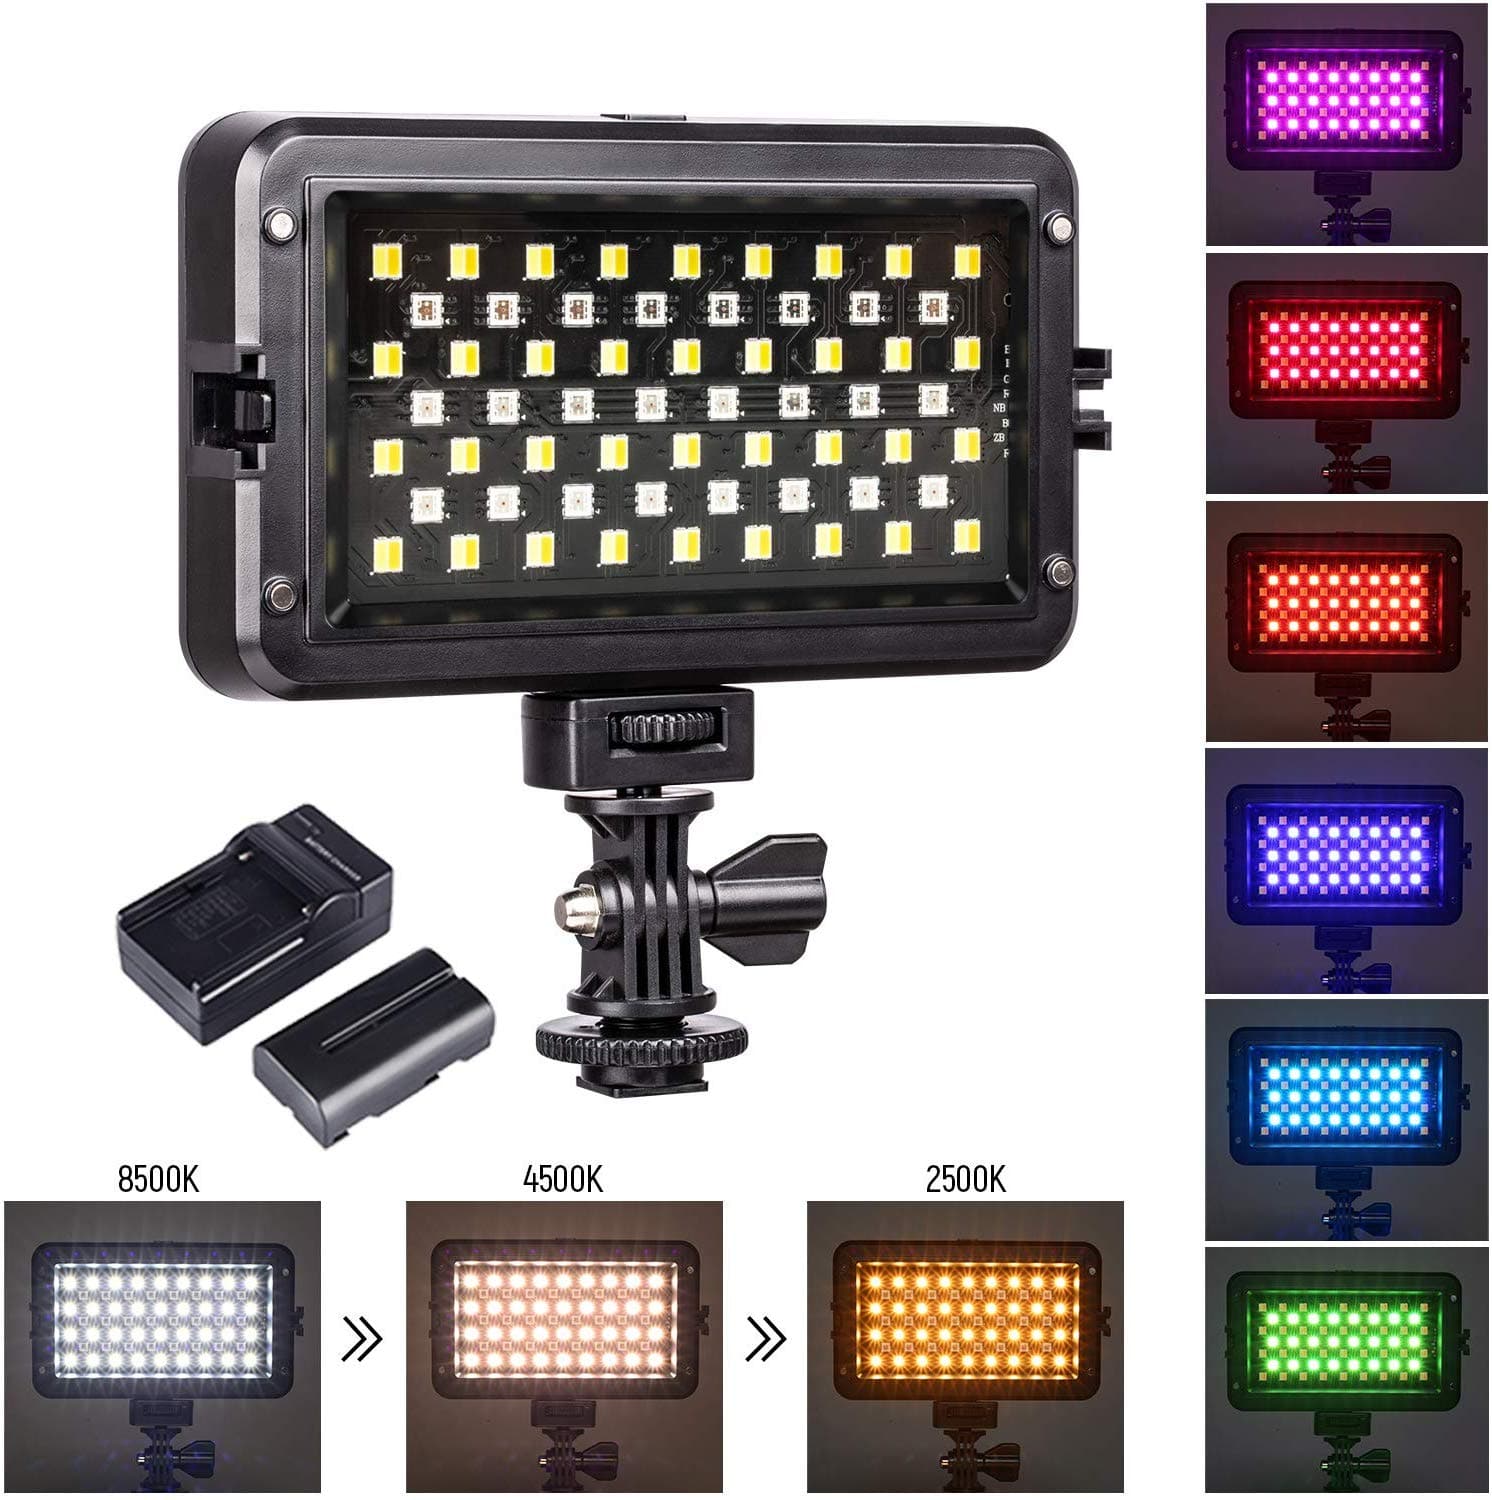 Viltrox RB10 RGB Led Light Kit